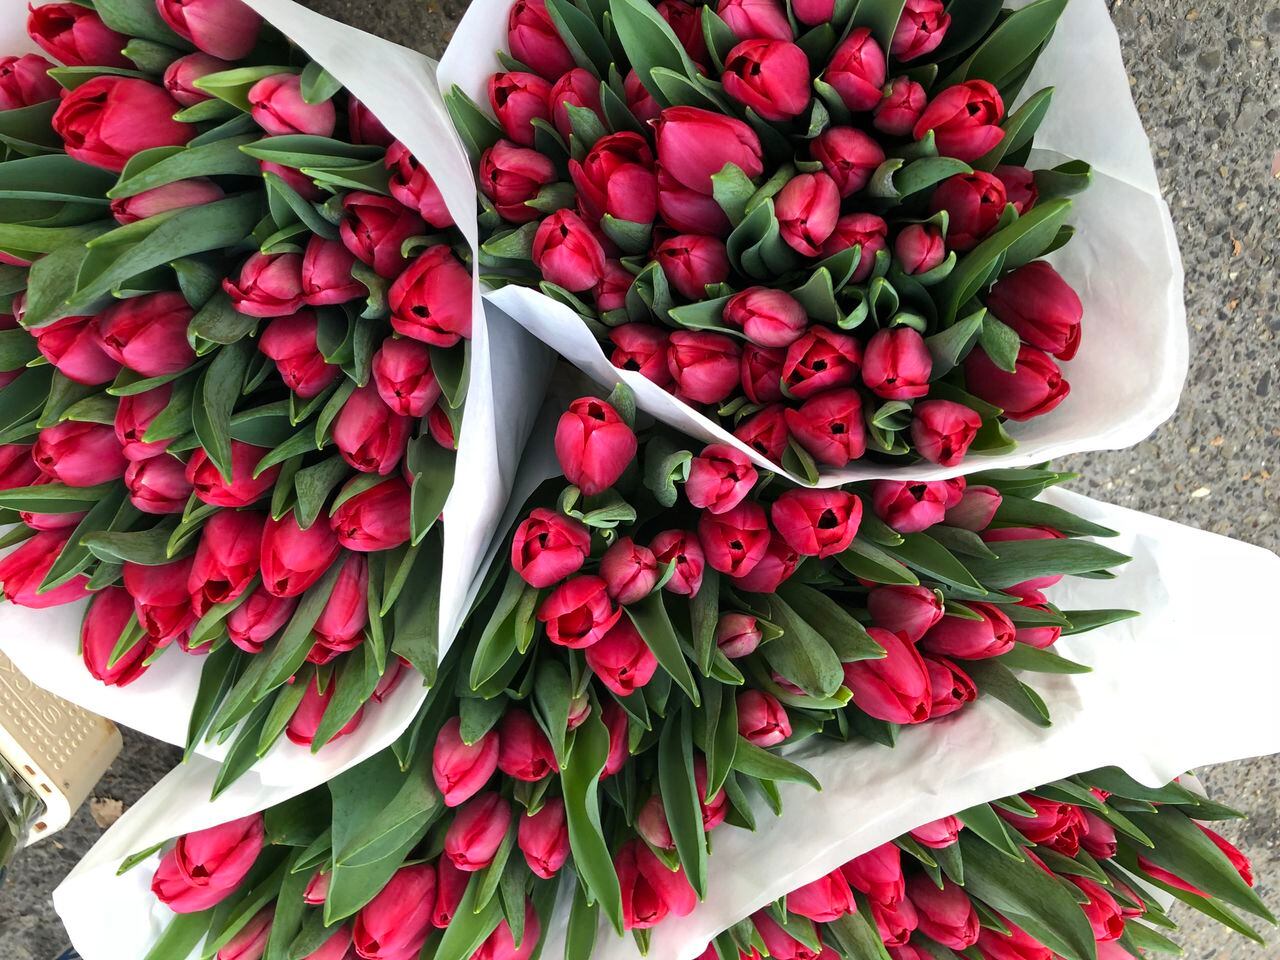 Entre en el vasto mundo de las flores y conoce a los tulipanes, embajadores vibrantes de la primavera